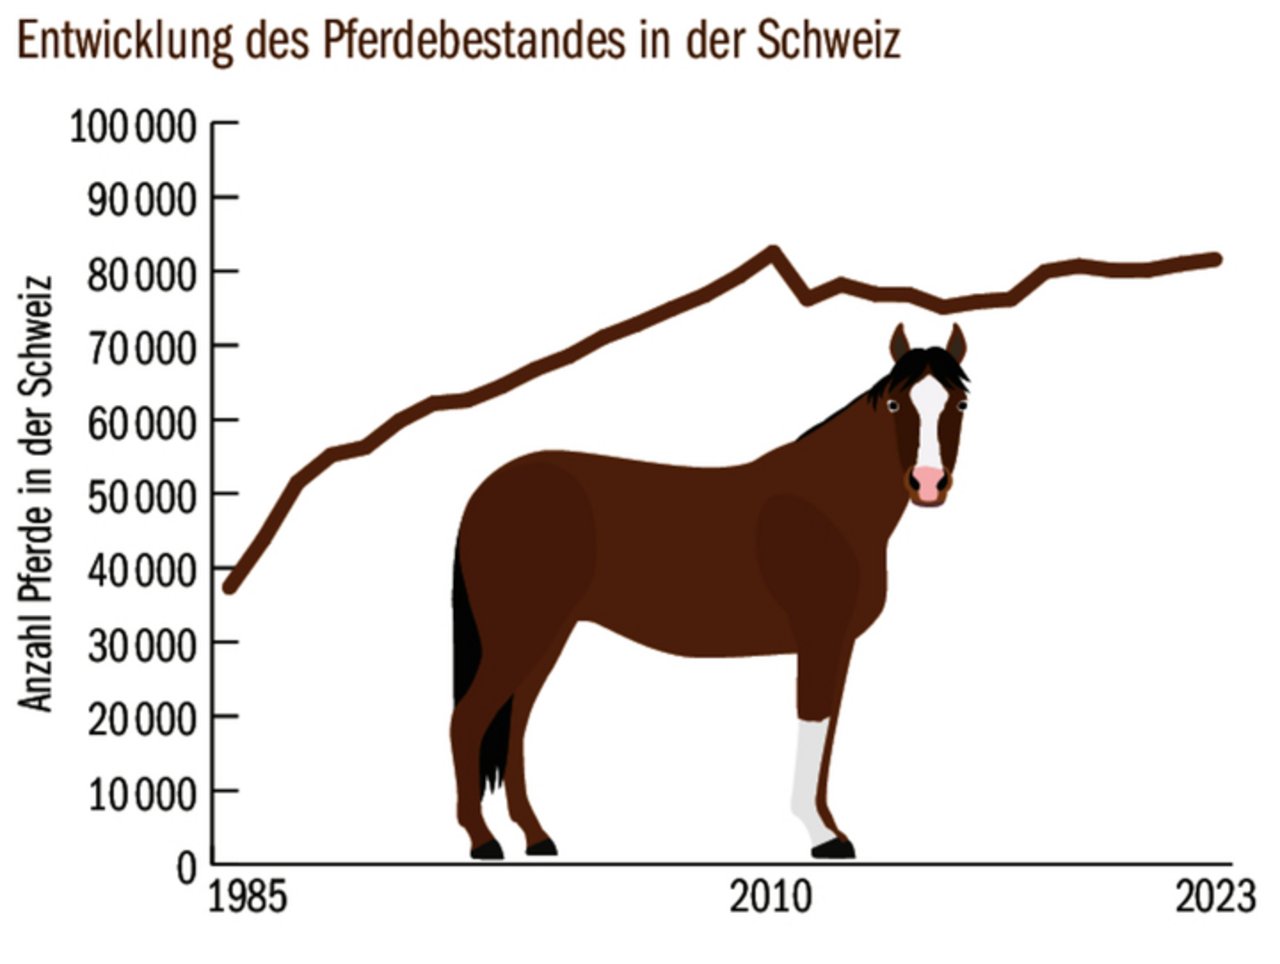 Die Anzahl Pferde in der Schweiz hat sich in den letzten 40 Jahren auf heute über 80 000 Stück mehr als verdoppelt.